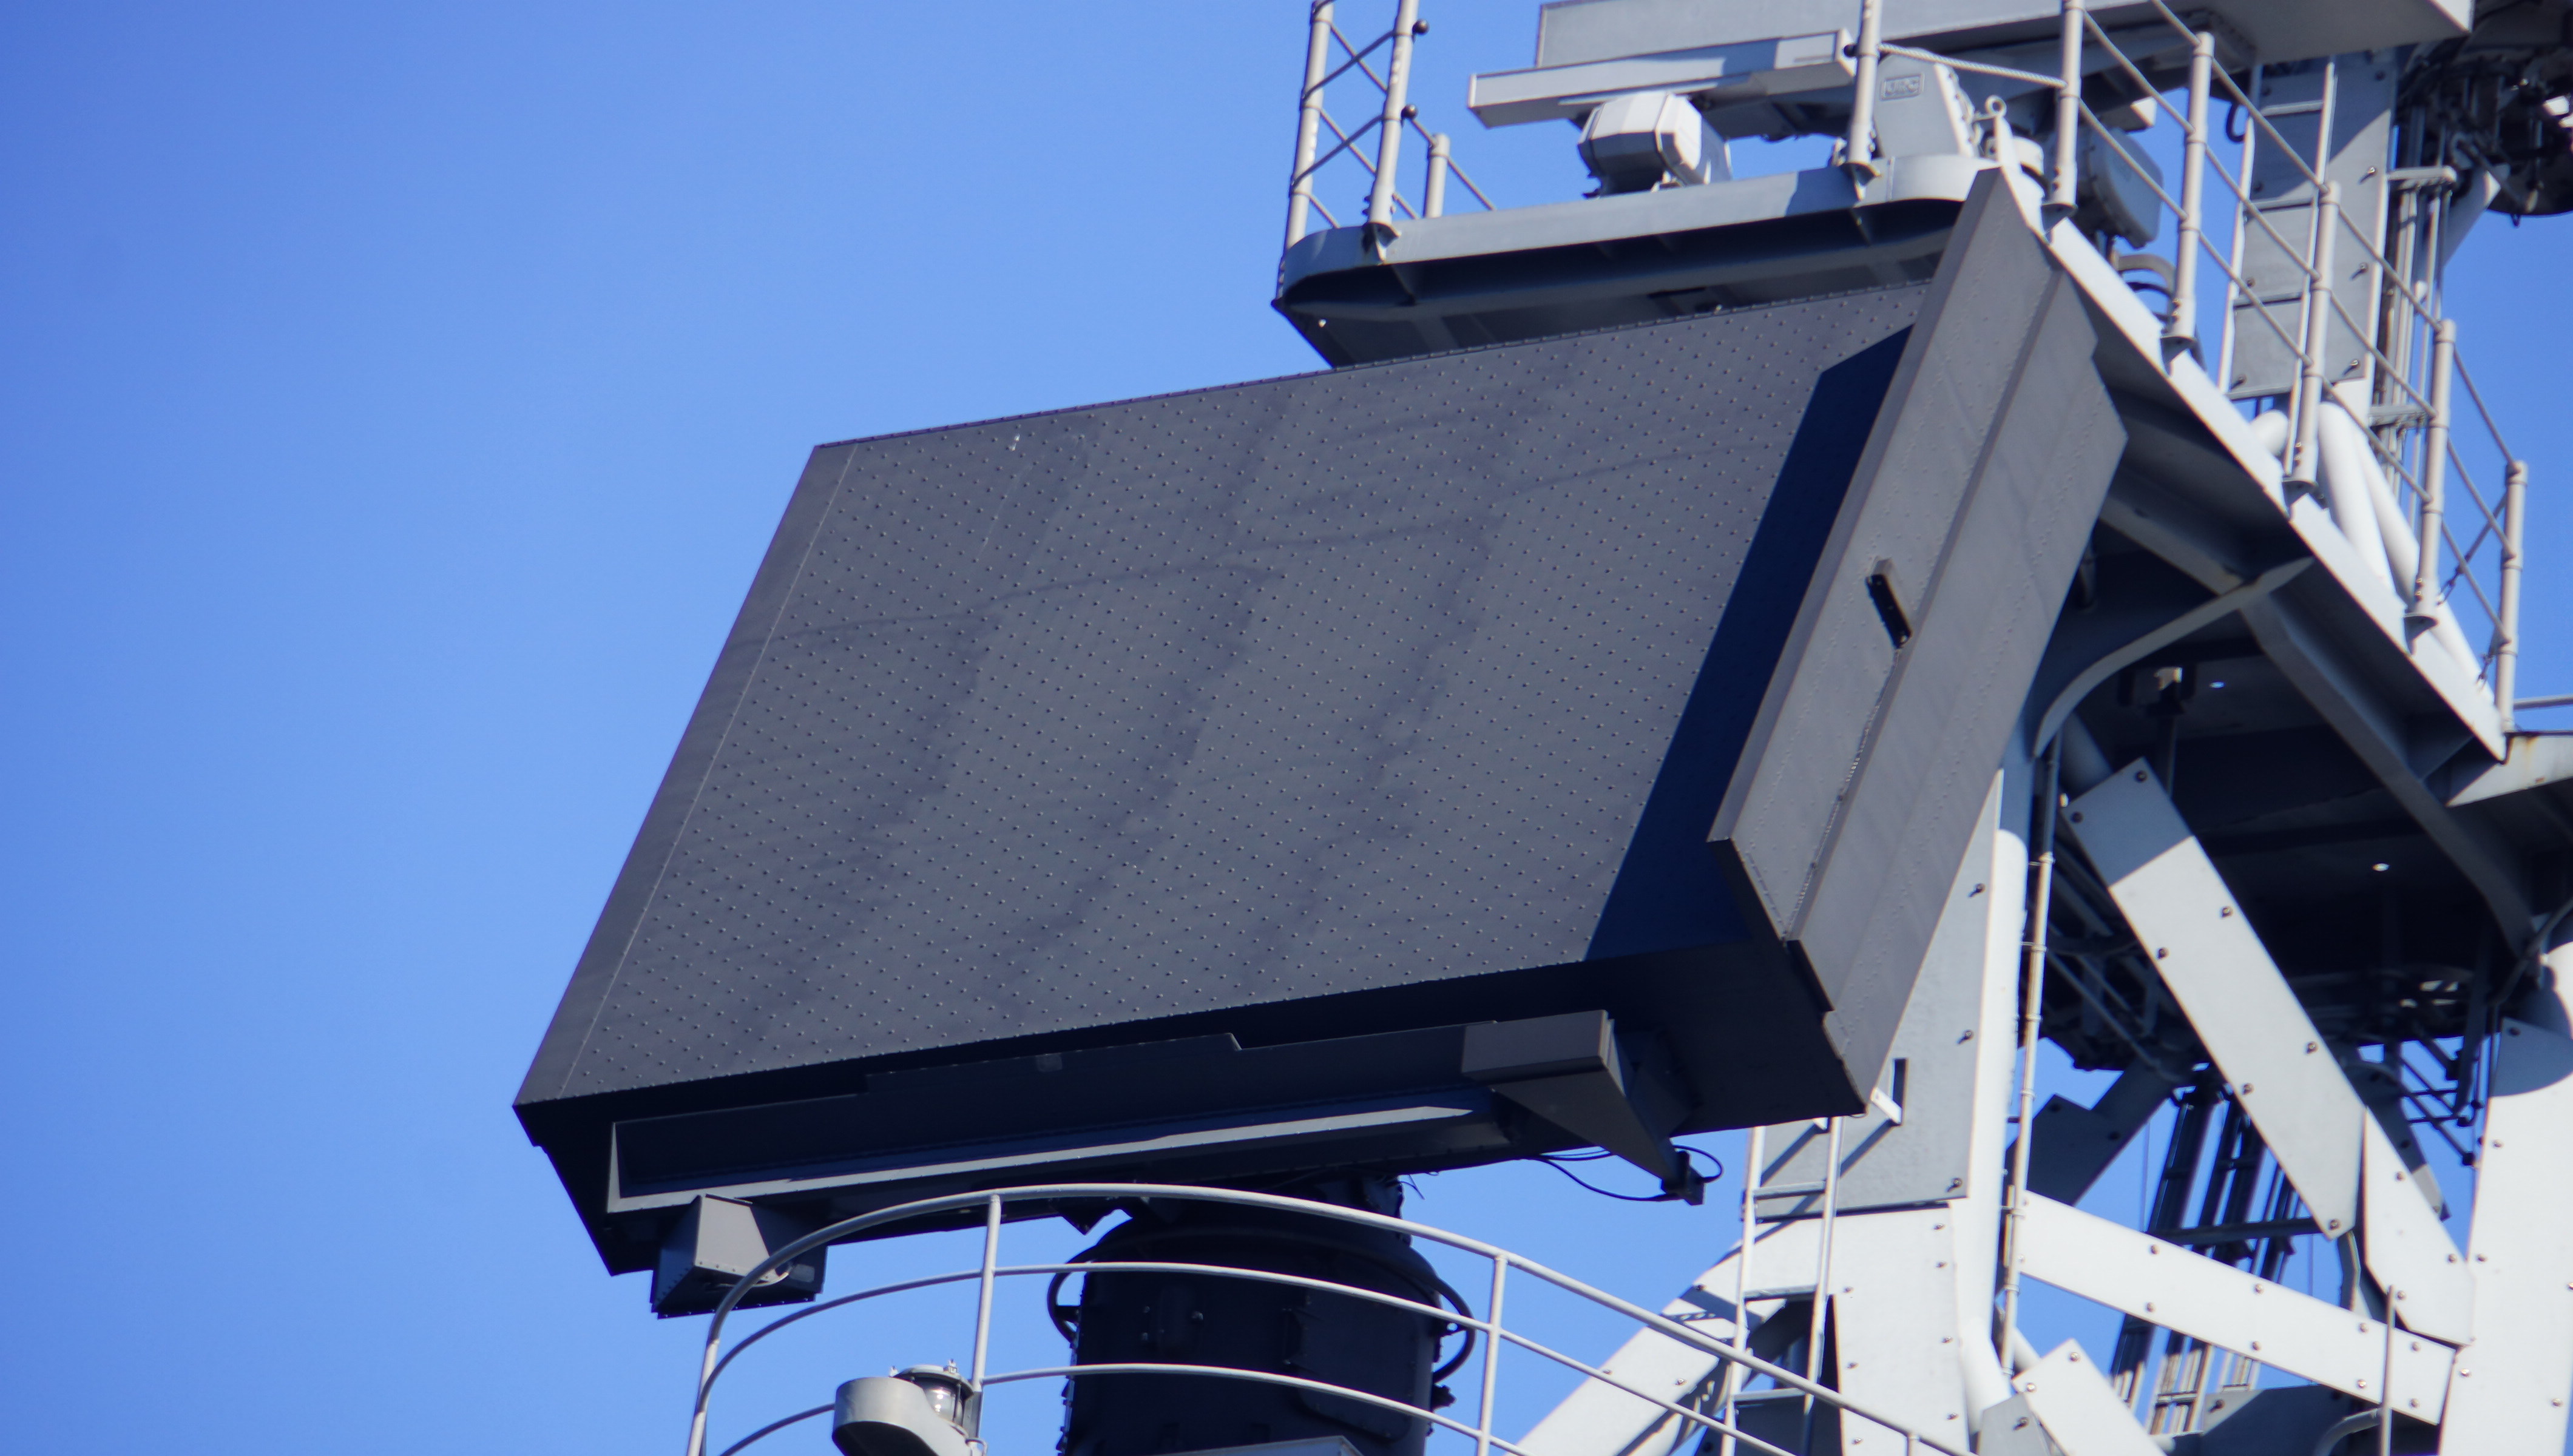 Валютный радар. An/SPS-69 Radar. Судовая радиолокационная станция. Экран корабельного радара. Портовый радар.